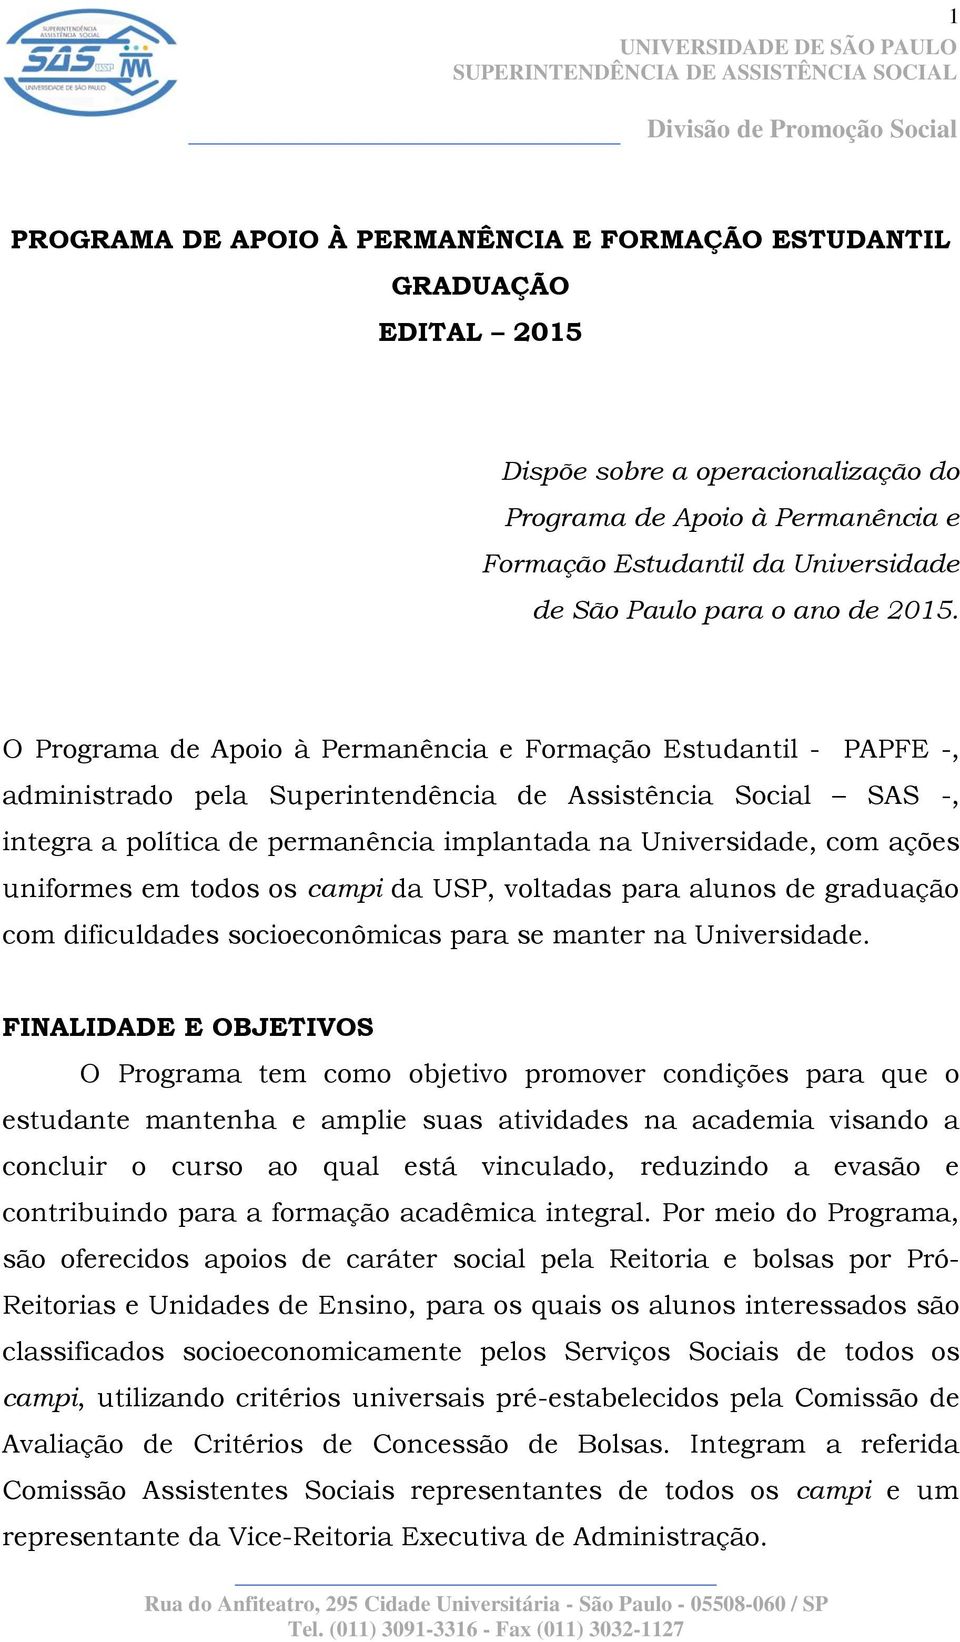 O Programa de Apoio à Permanência e Formação Estudantil - PAPFE -, administrado pela Superintendência de Assistência Social SAS -, integra a política de permanência implantada na Universidade, com